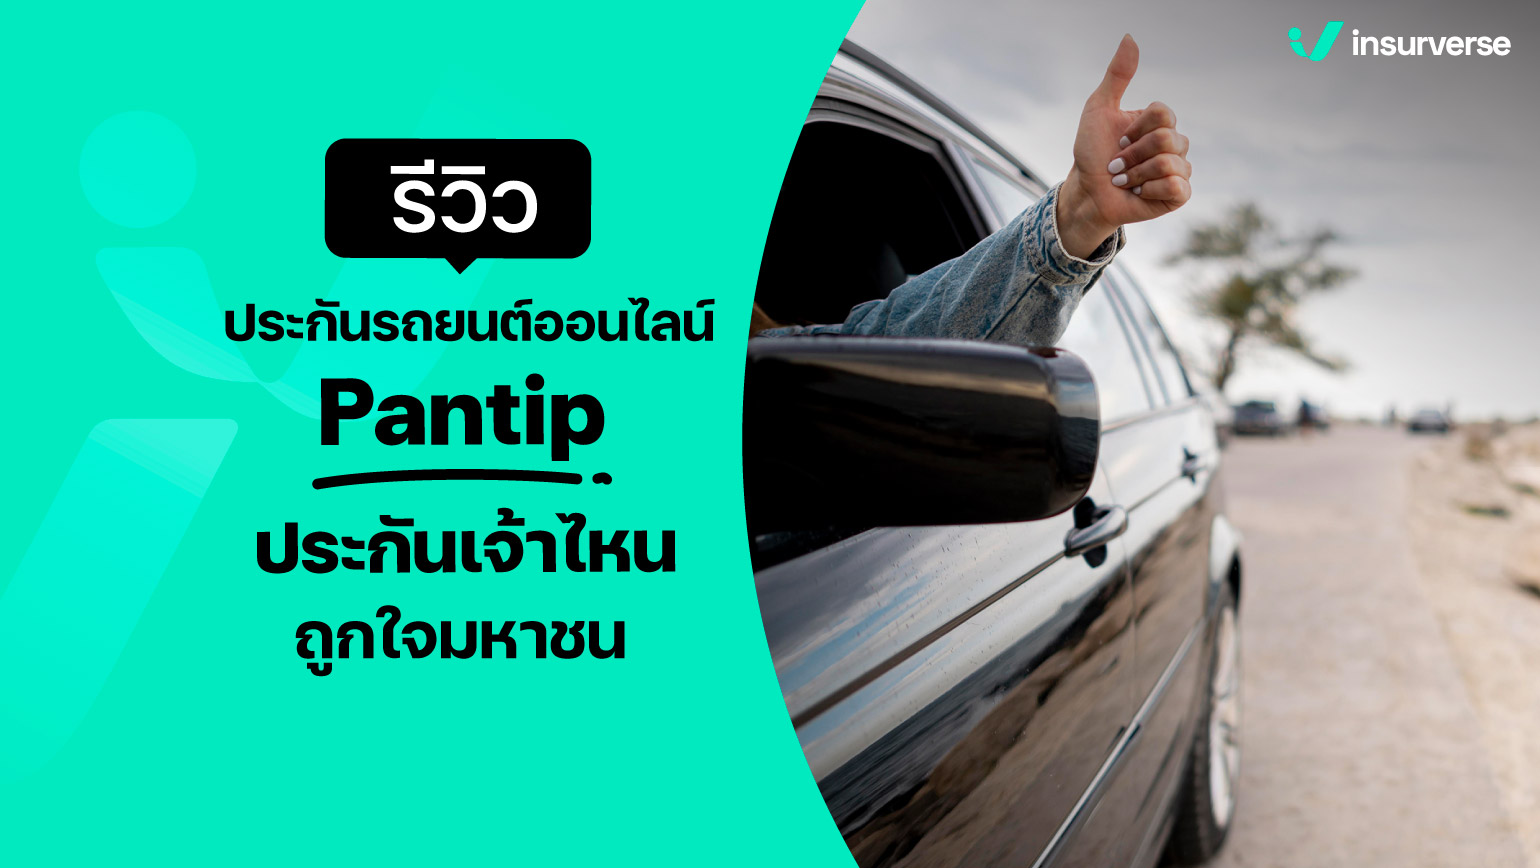 รีวิวประกันรถยนต์ออนไลน์ Pantip ประกันเจ้าไหนถูกใจมหาชน